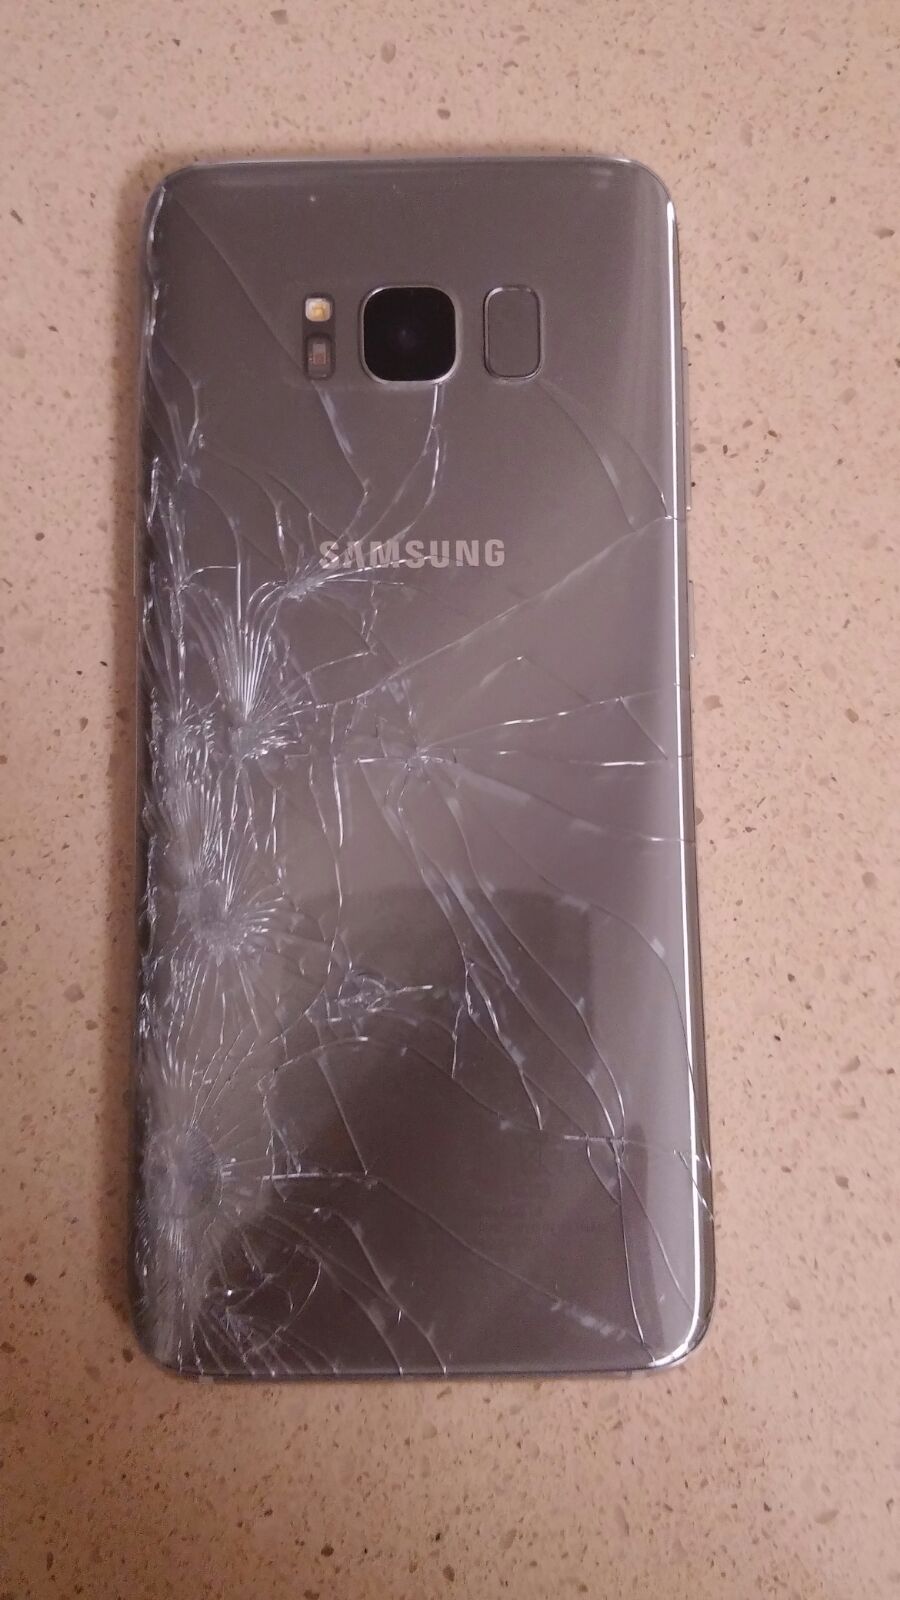 Samsung s8 vetro posteriore rotto - Pagina 2 - Samsung Community